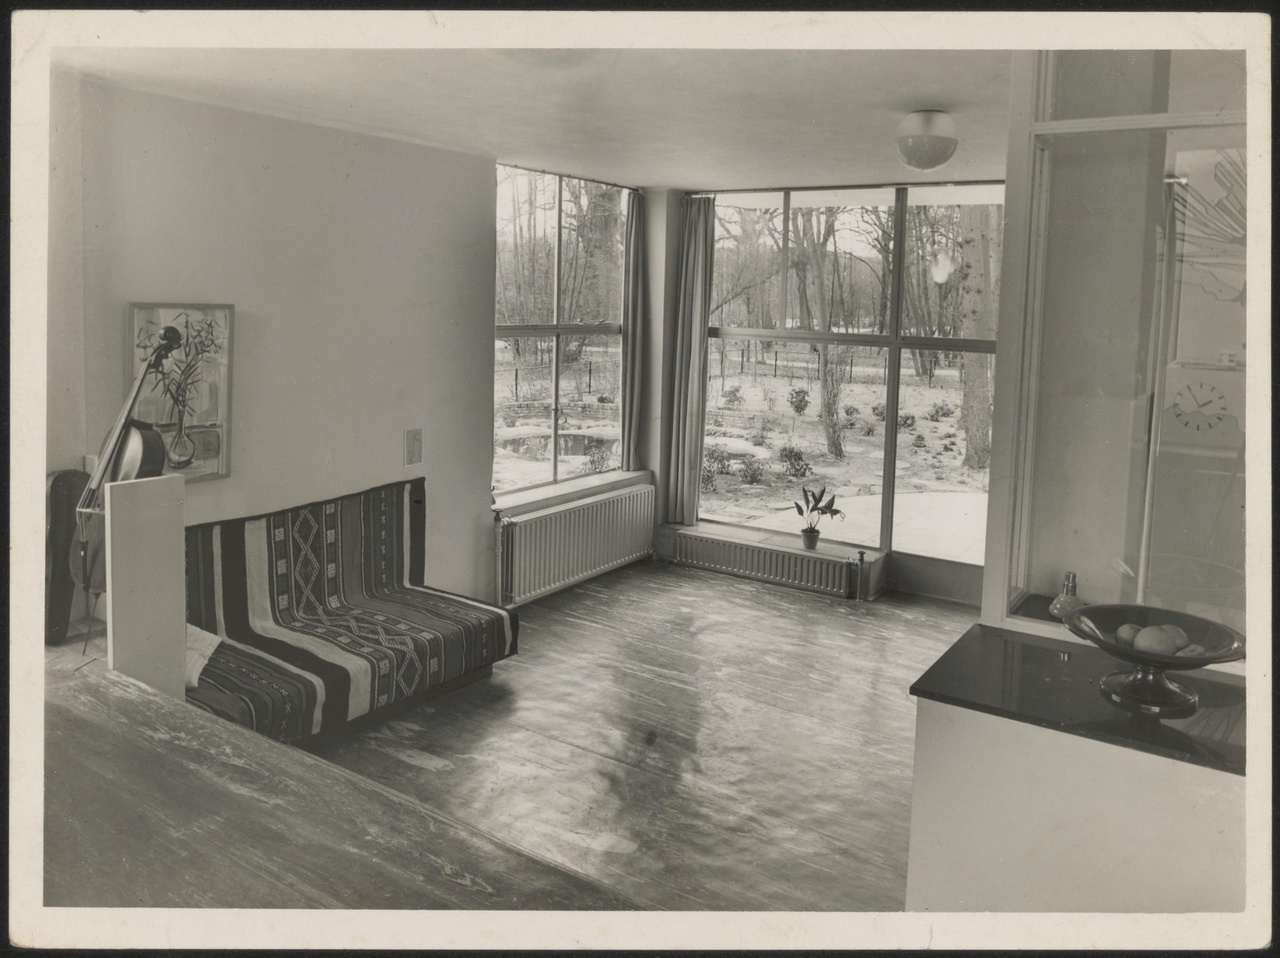 Afbeelding van woning Hillebrand, interieur woonkamer met hoekramen zonder losse meubels